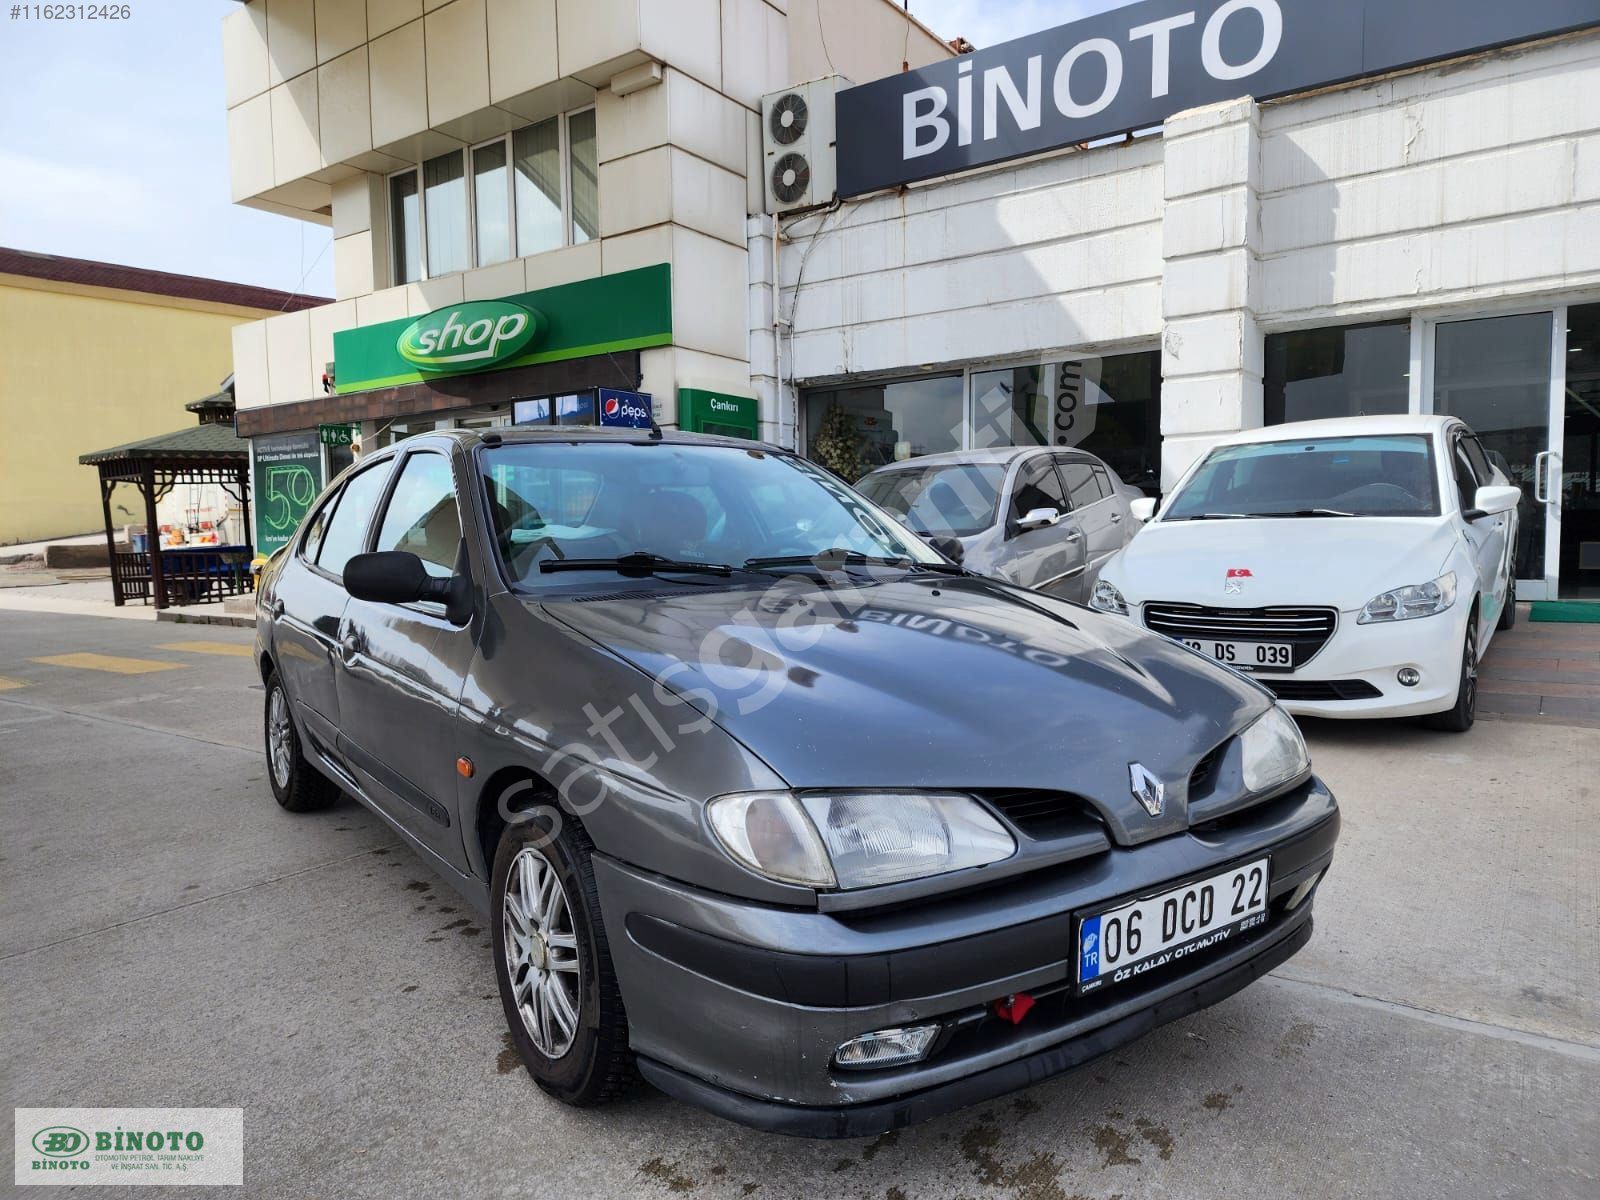 BİNOTO 'dan 1999 Mod. Renault Megane 1 1.6 Benzin lpg